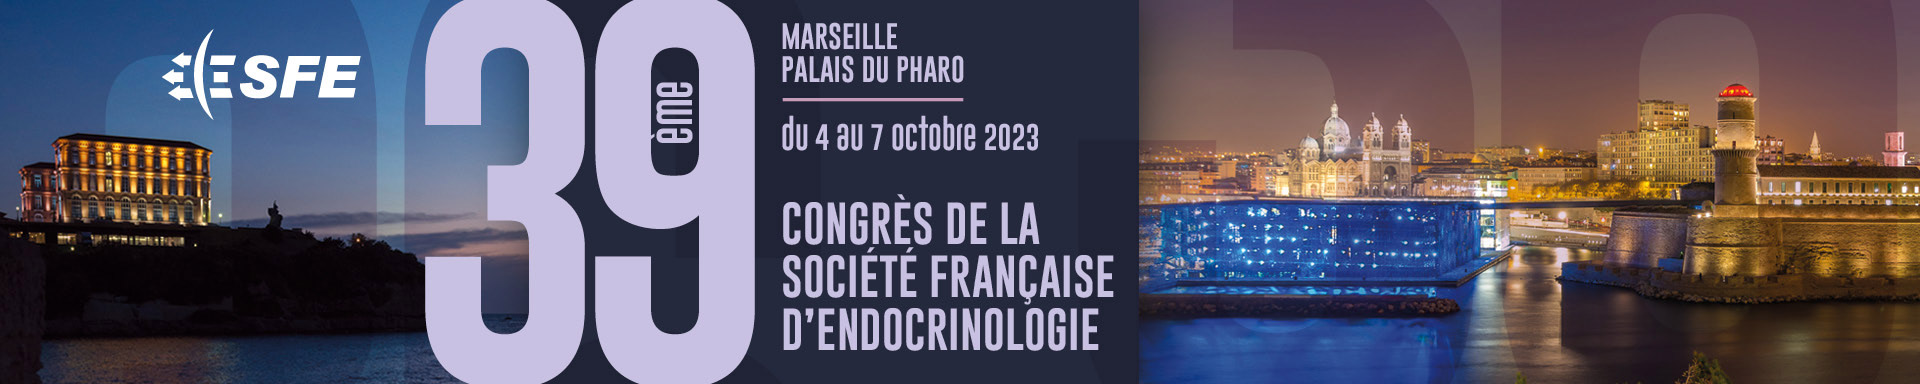 39ème Congrès de la Société Française d'Endocrinologie - SFE 2023